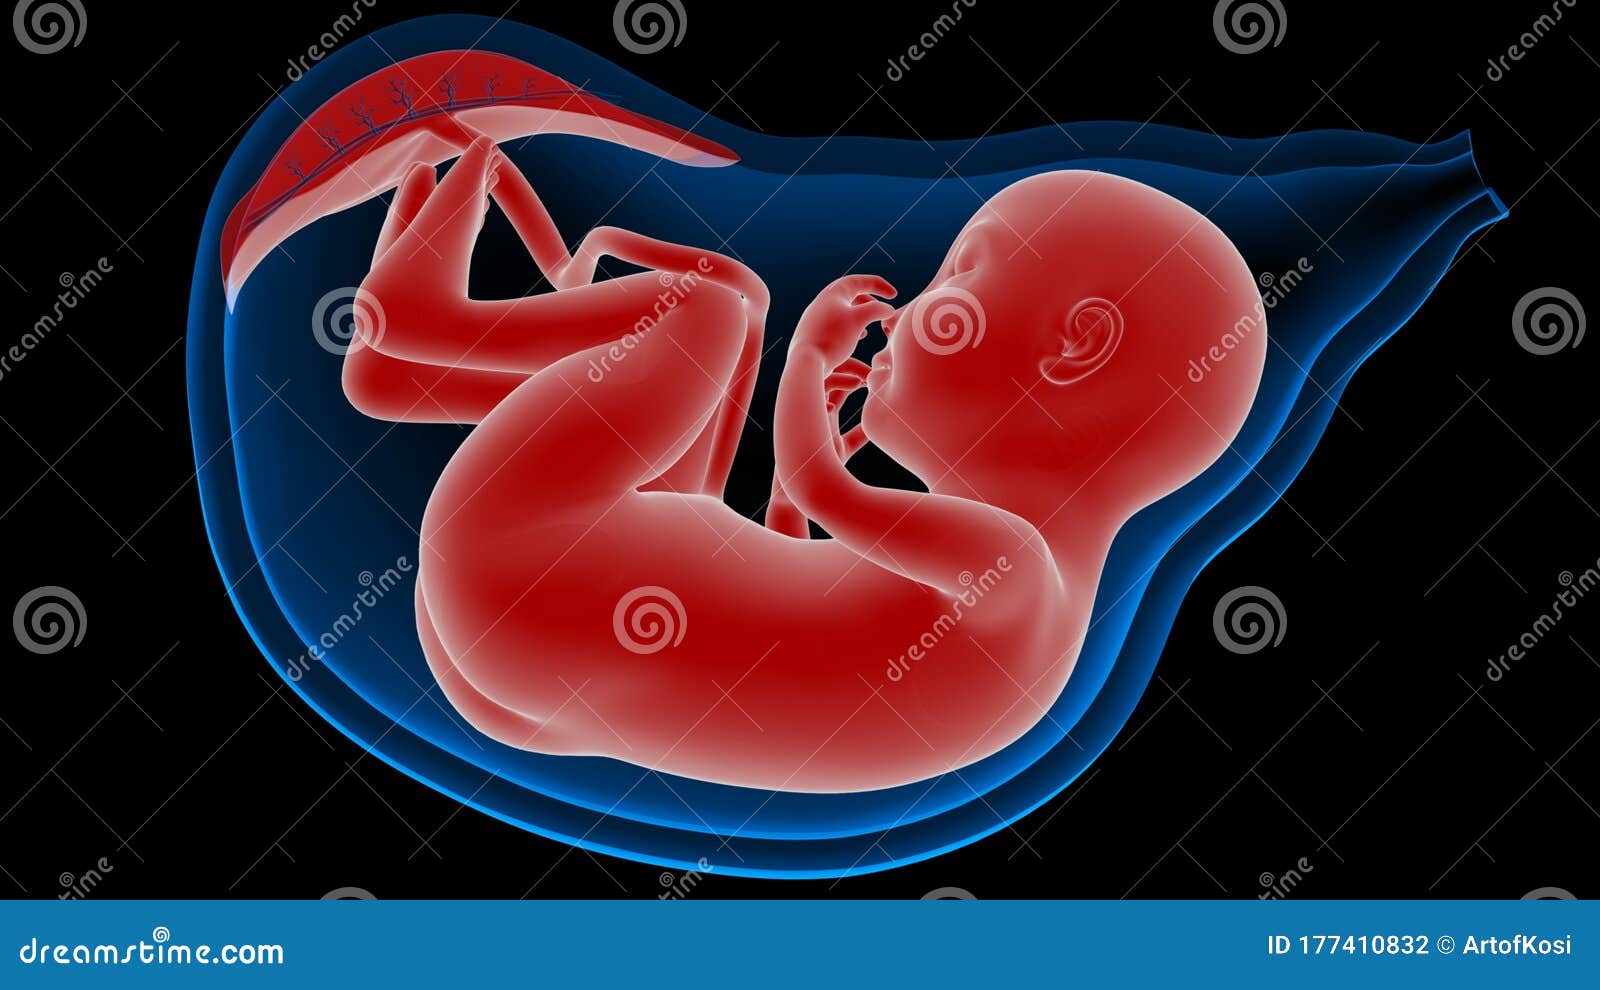 胚胎发育过程图详解_有来医生